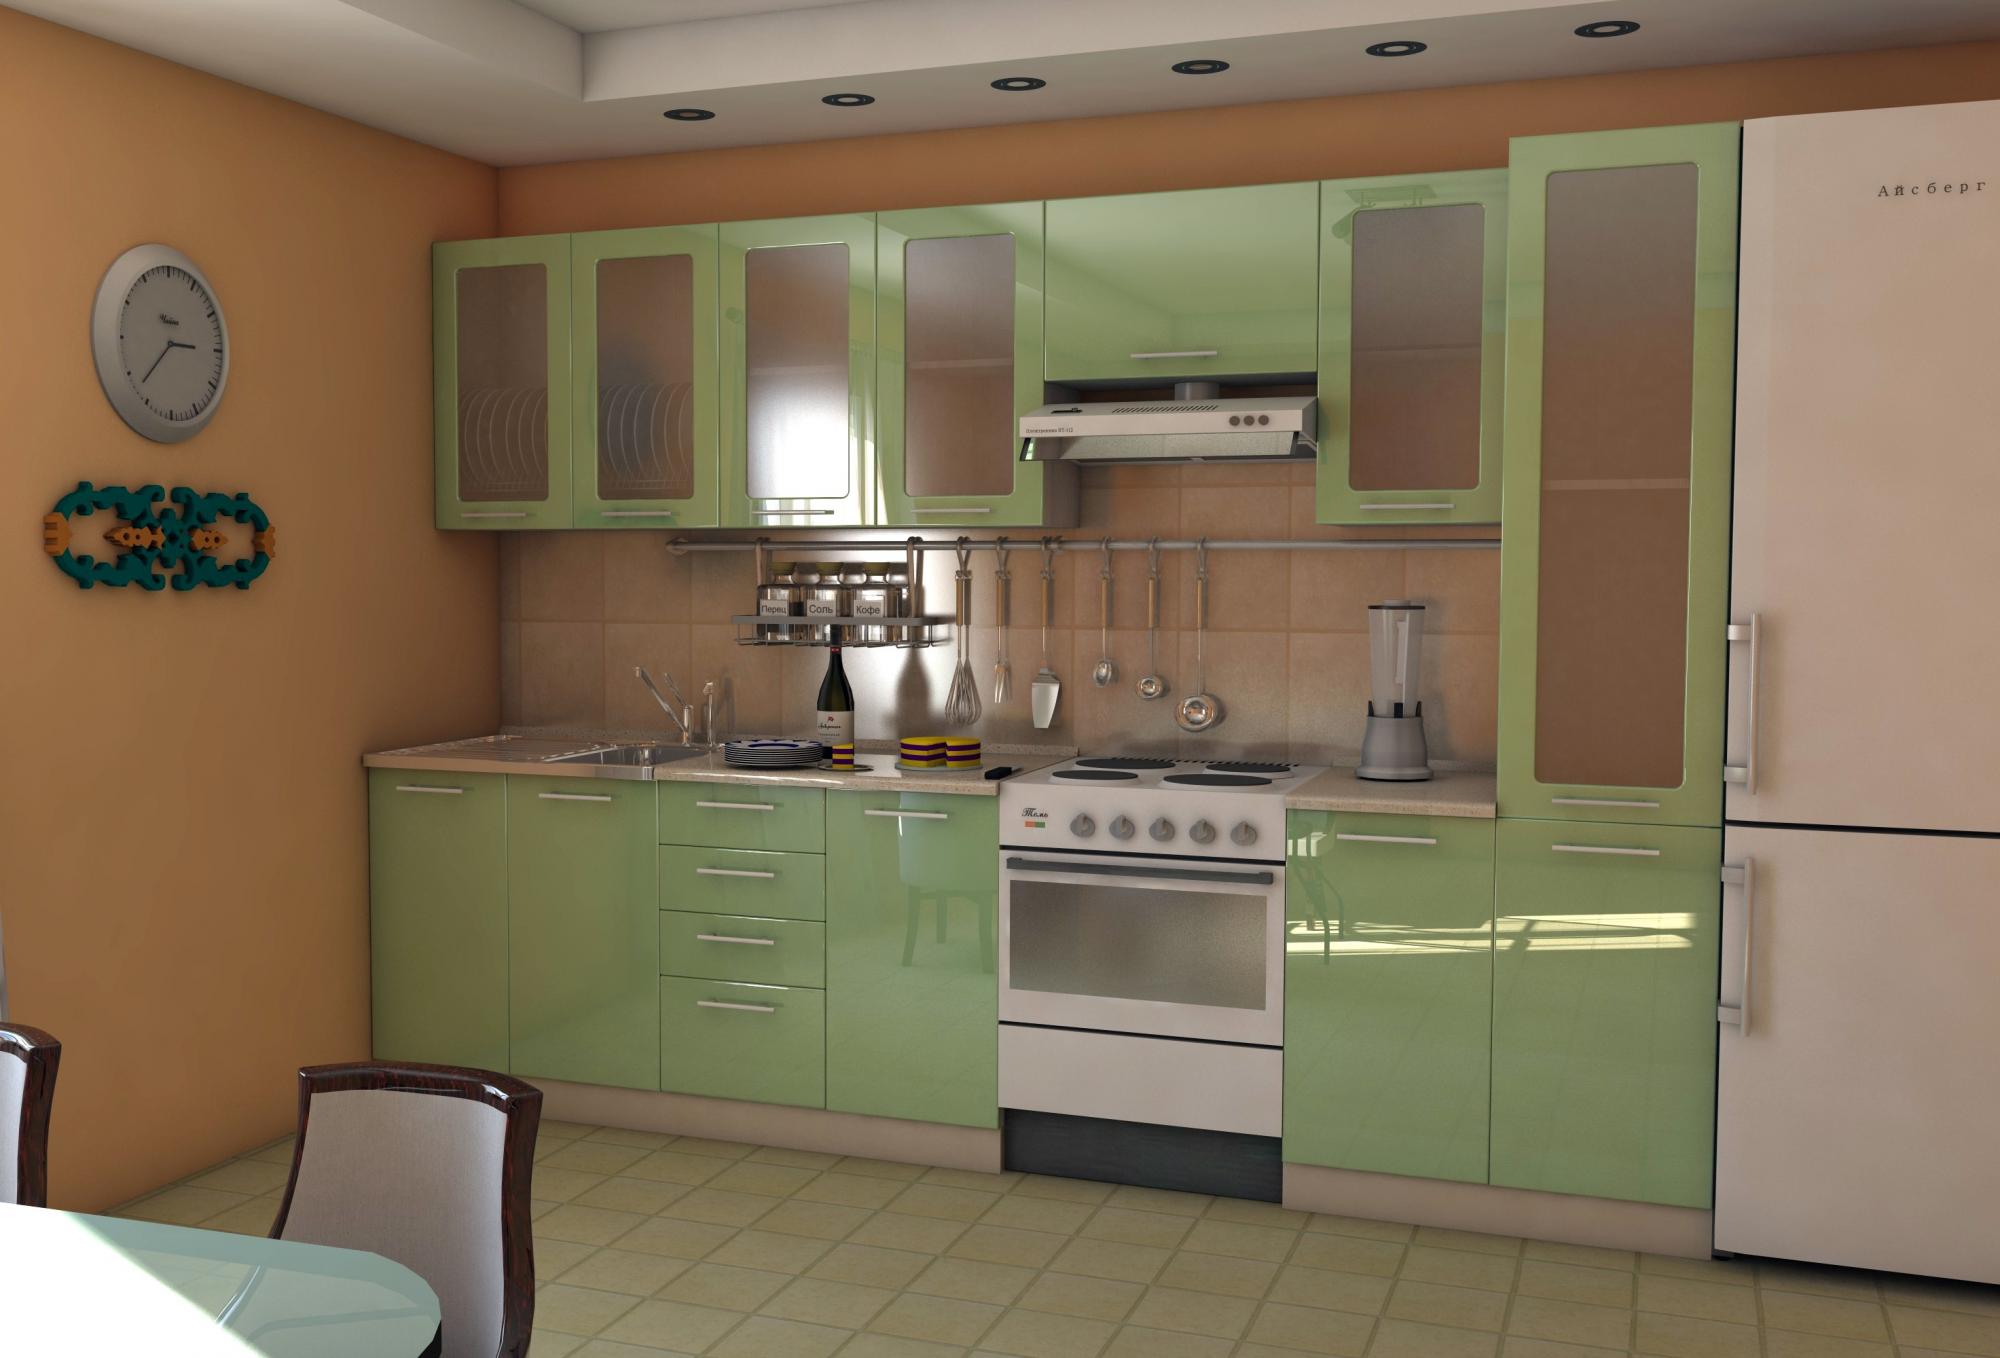 Мебель новосибирск недорого каталог и цены. Кухонный гарнитур зеленый. Кухонный гарнитур салатового цвета. Зеленый металлик кухня. Кухонный гарнитур в зеленых тонах.